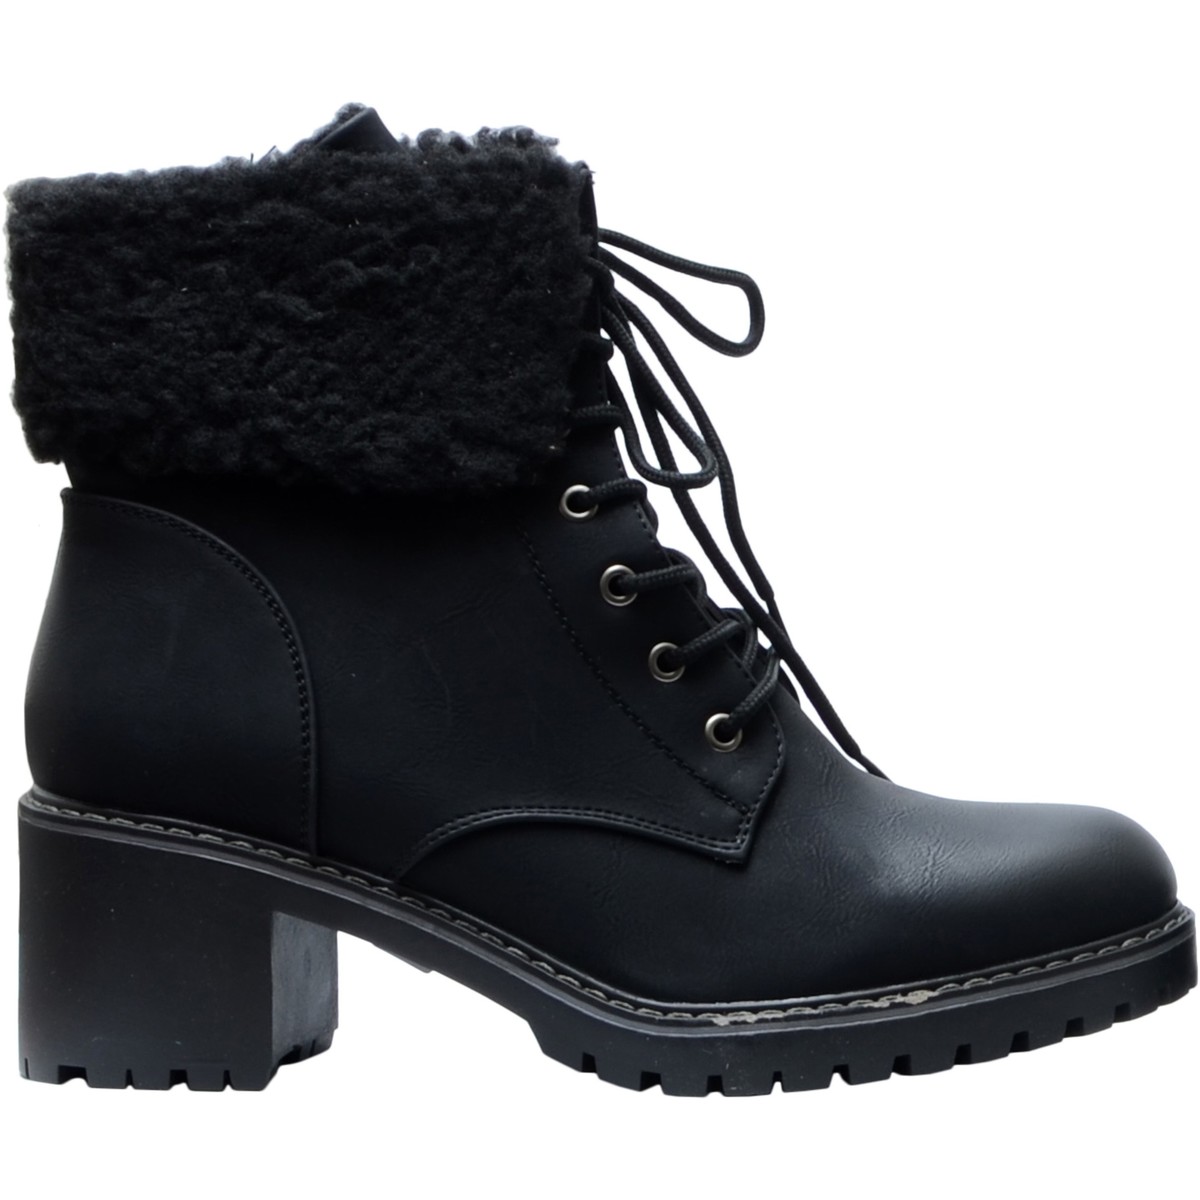 Chaussures Femme Boots à Lacet Et Boucle Bottines PI4541 Noir